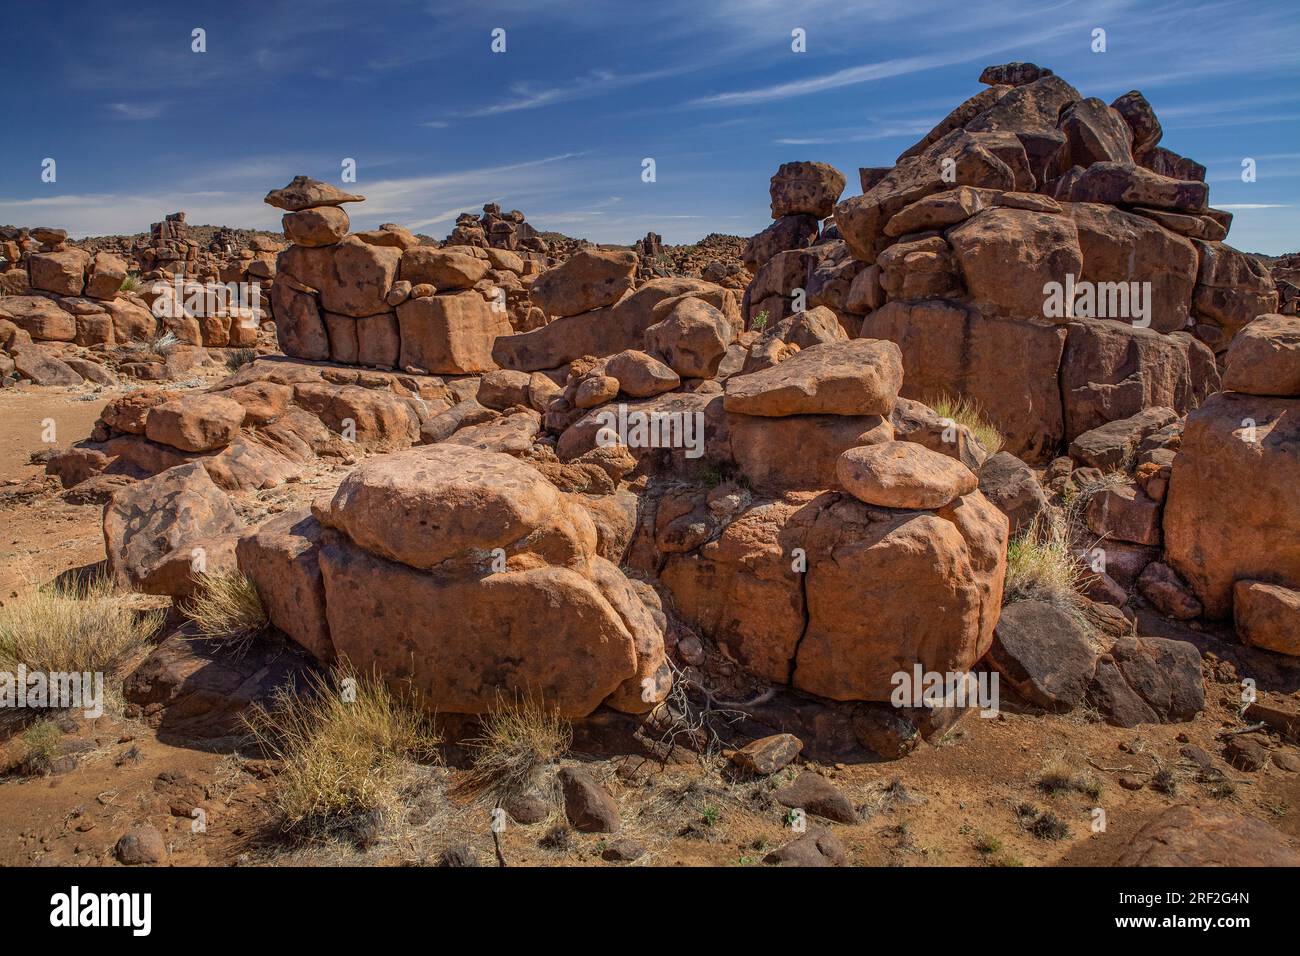 Rocks of Giants Playground, Keetmanshoop, Namibia Stock Photo